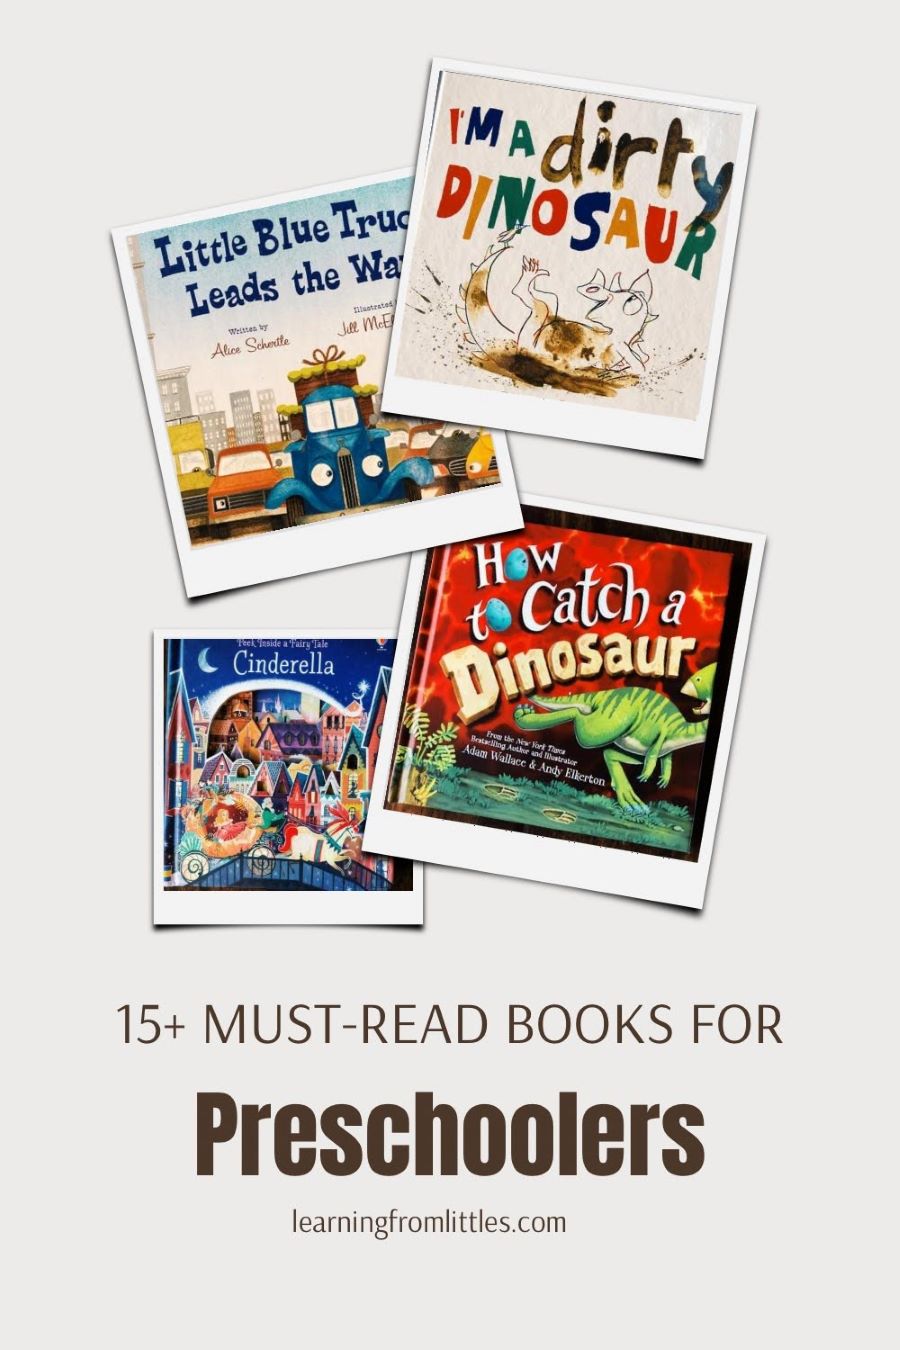 15+ BEST Books for Preschoolers